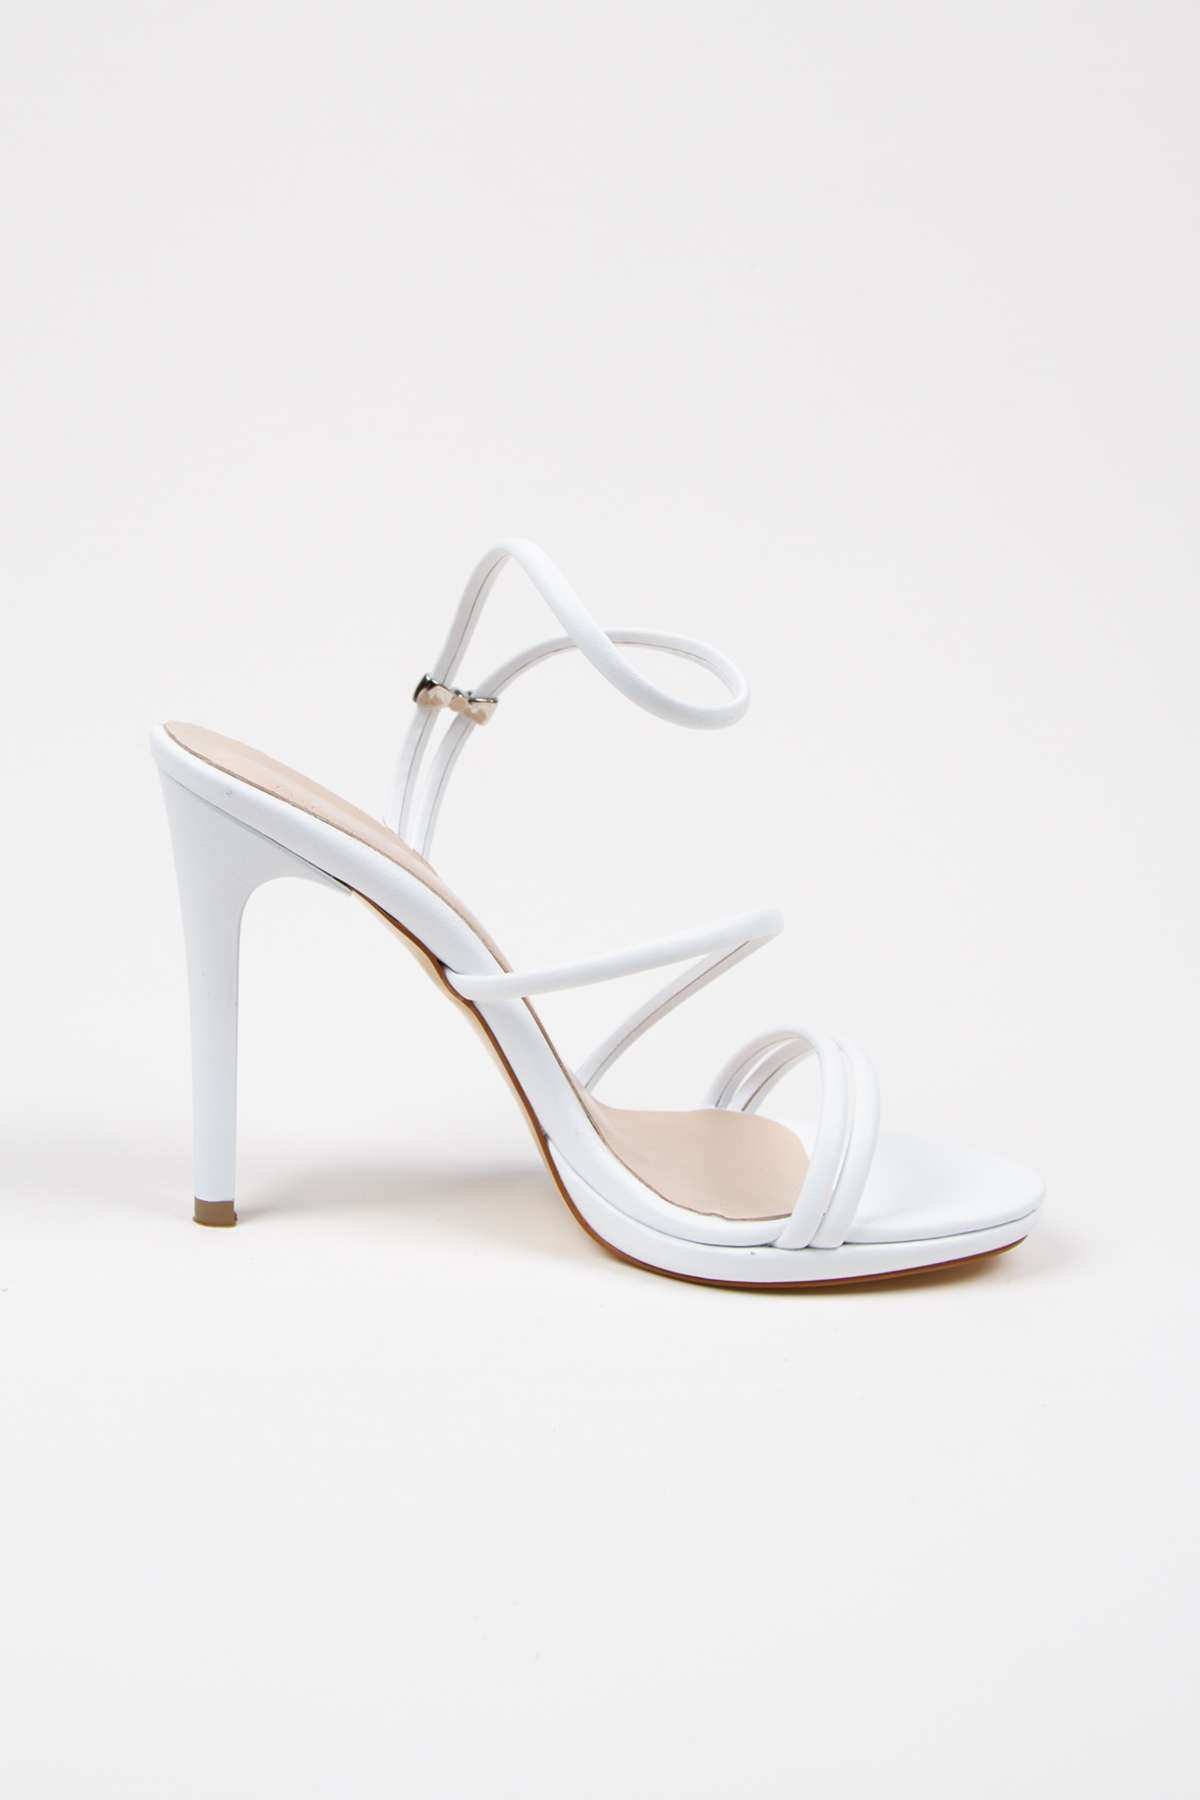 Kadın Yazlık 10 cm Beyaz İnce Topuklu Platformlu Ayakkabı